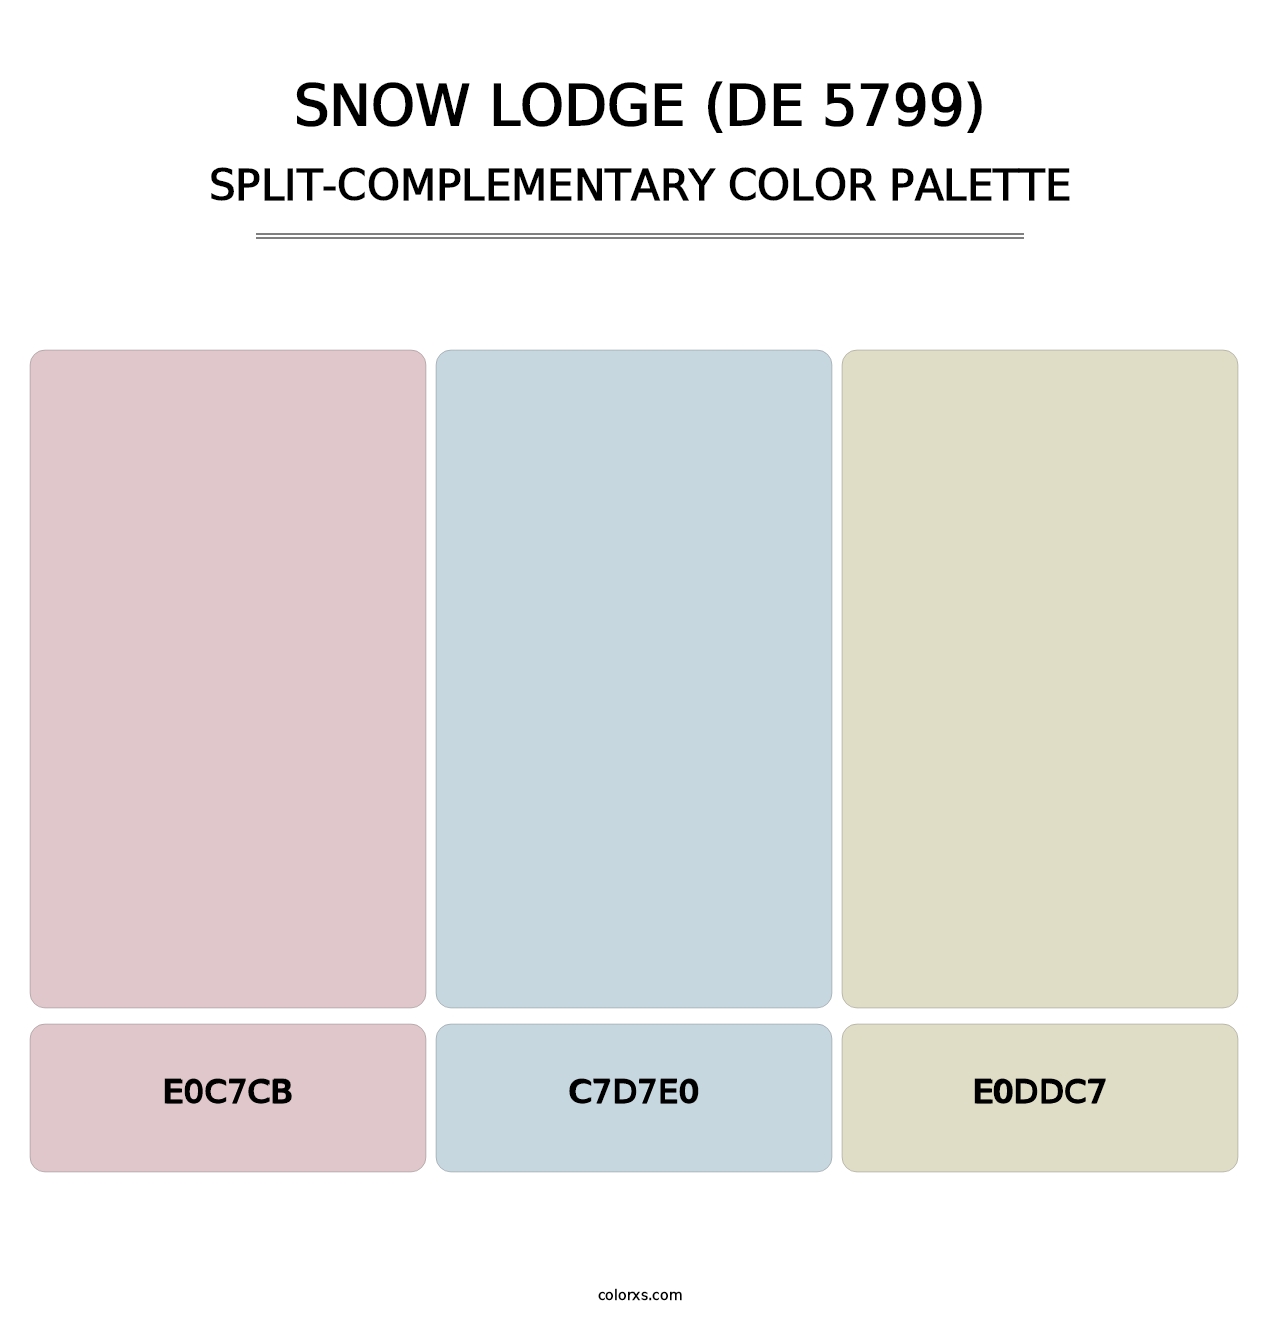 Snow Lodge (DE 5799) - Split-Complementary Color Palette